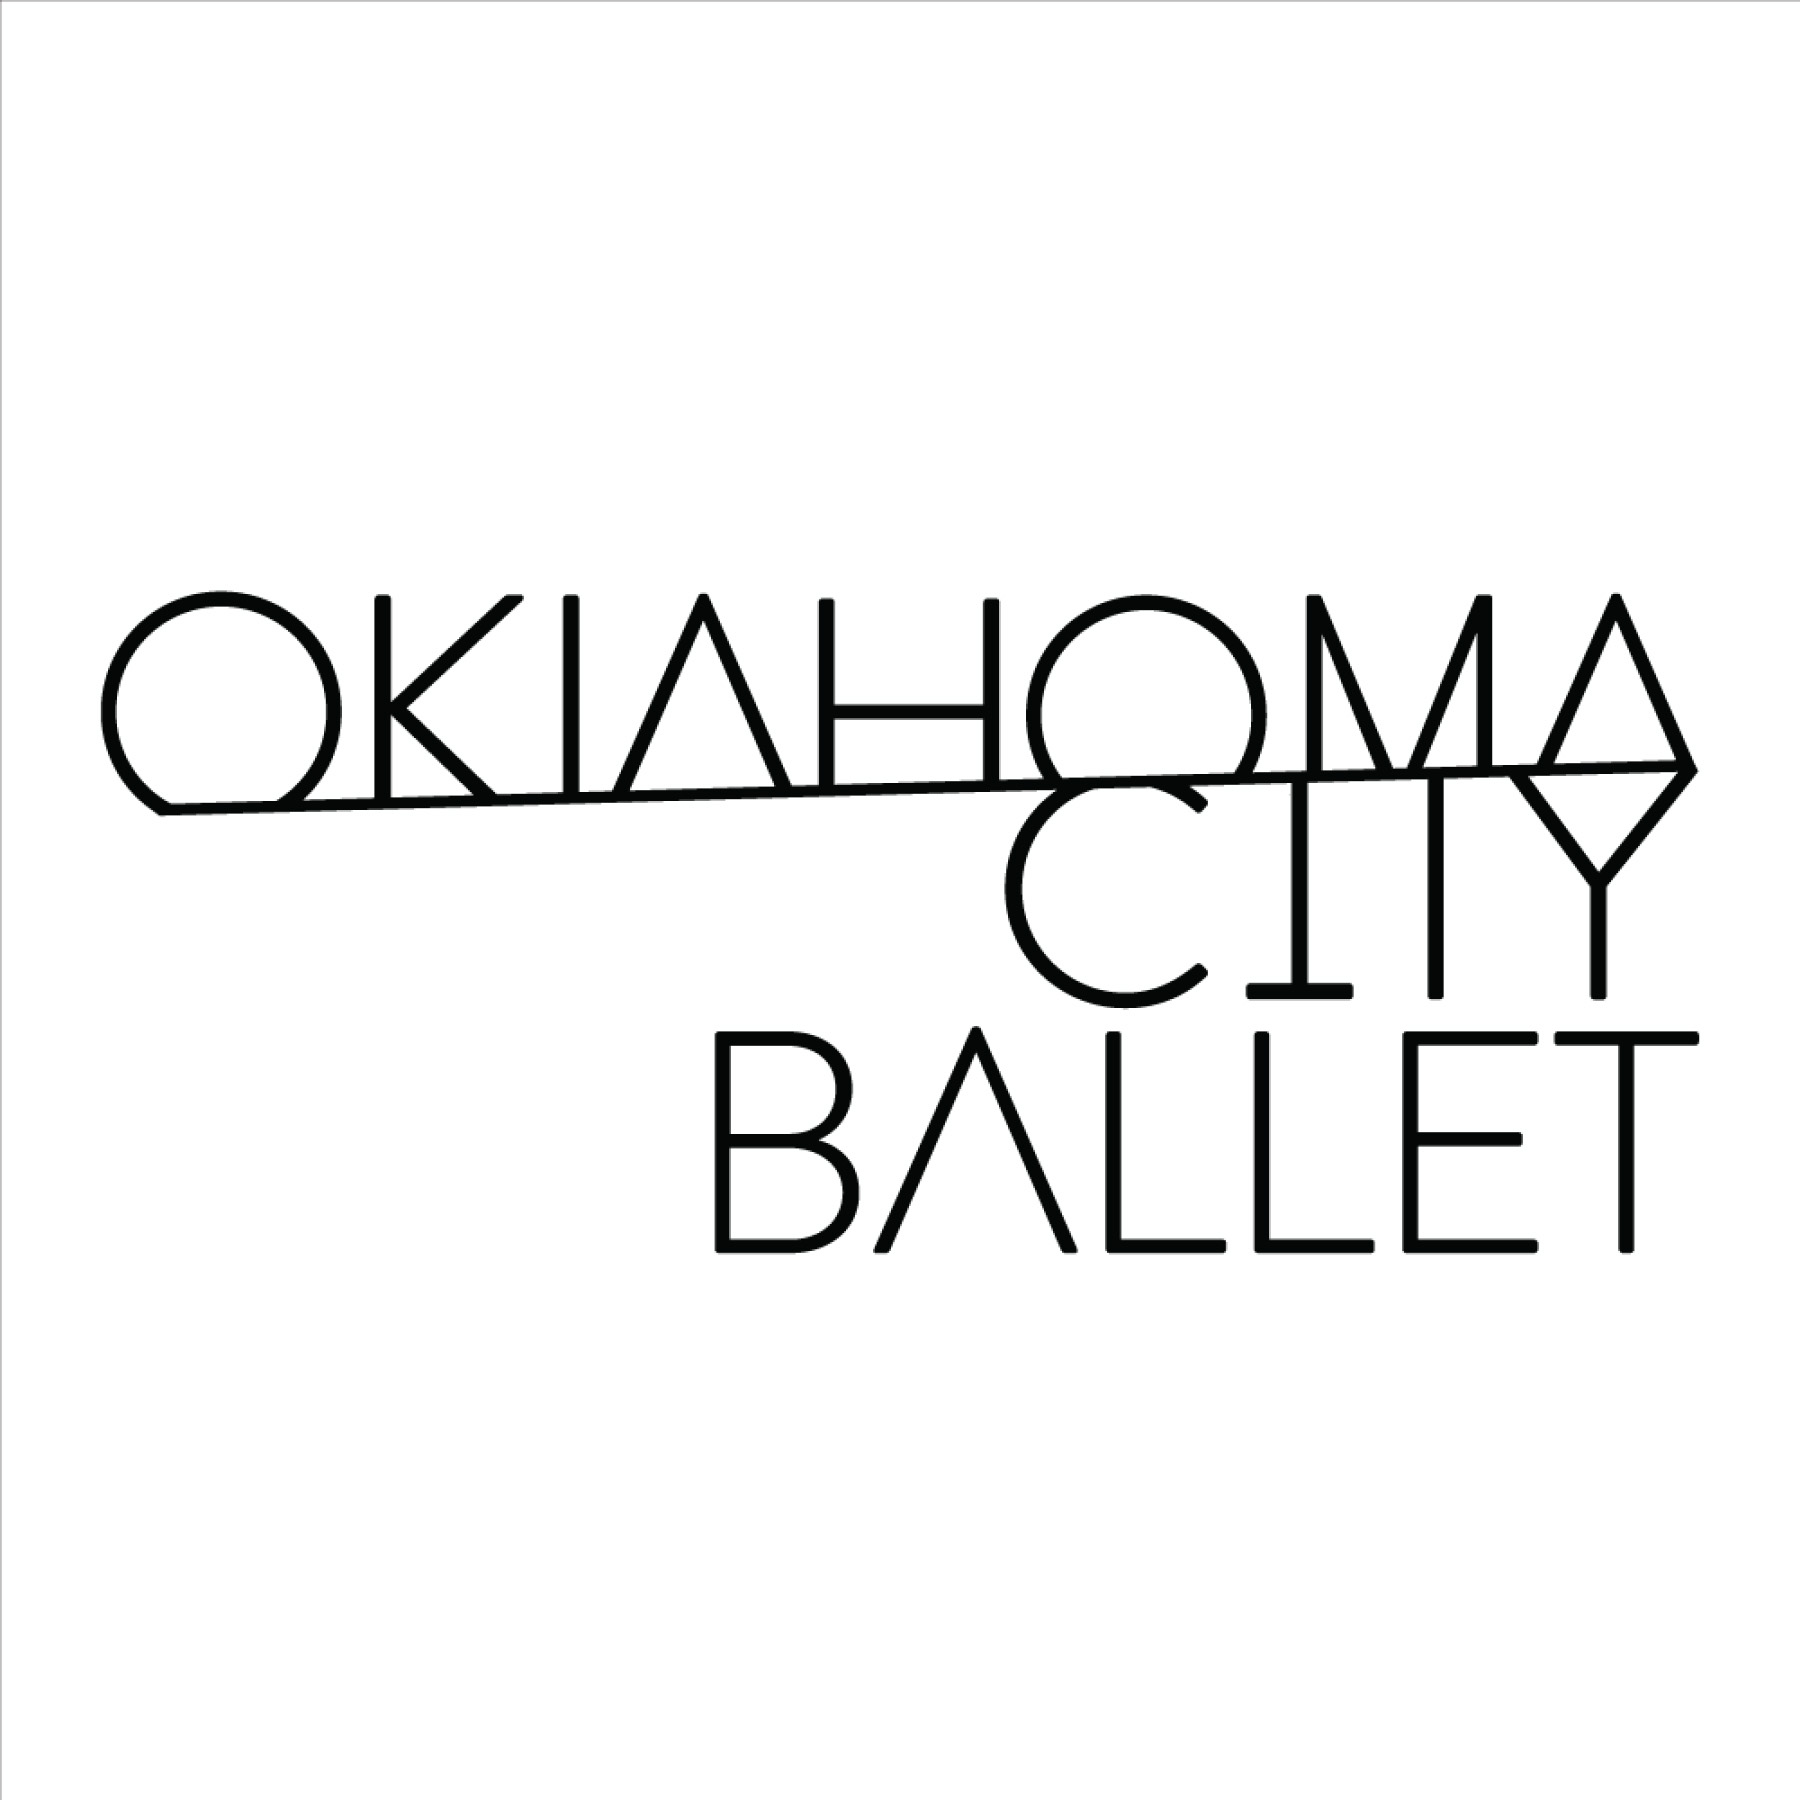 Oklahoma City Ballet: Shorts at Thelma Gaylord at Civic Center Music Hall